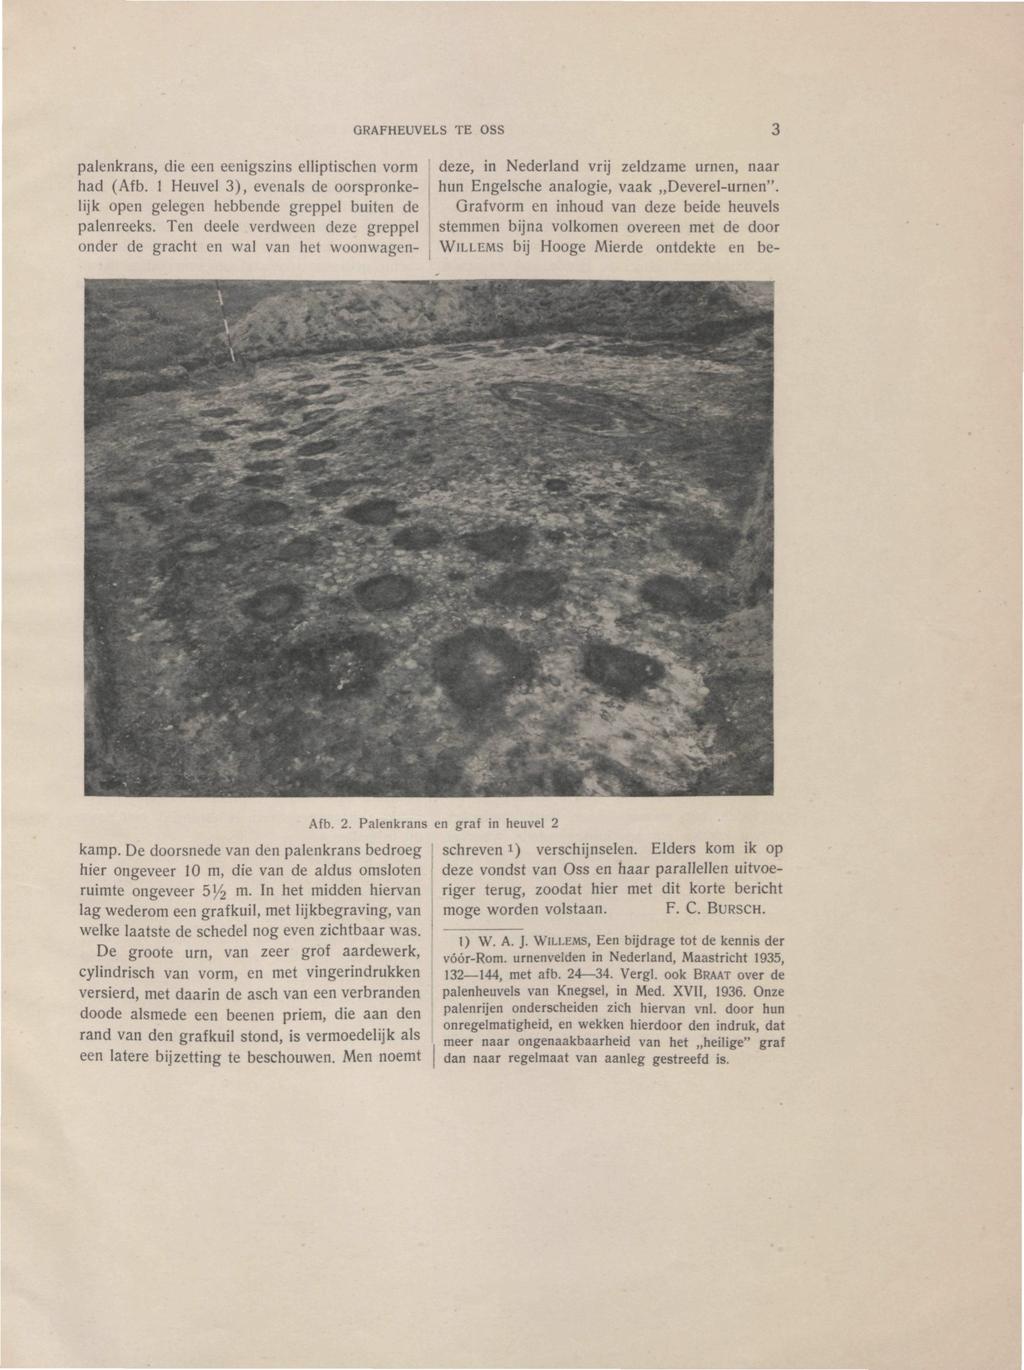 ORAFHEUVELS TE OSS palenkrans, die een eenigszins elliptischen vorm had (Afb. 1 Heuvel 3), evenals de oorspronkelijk open gelegen hebbende greppel buiten de palenreeks.